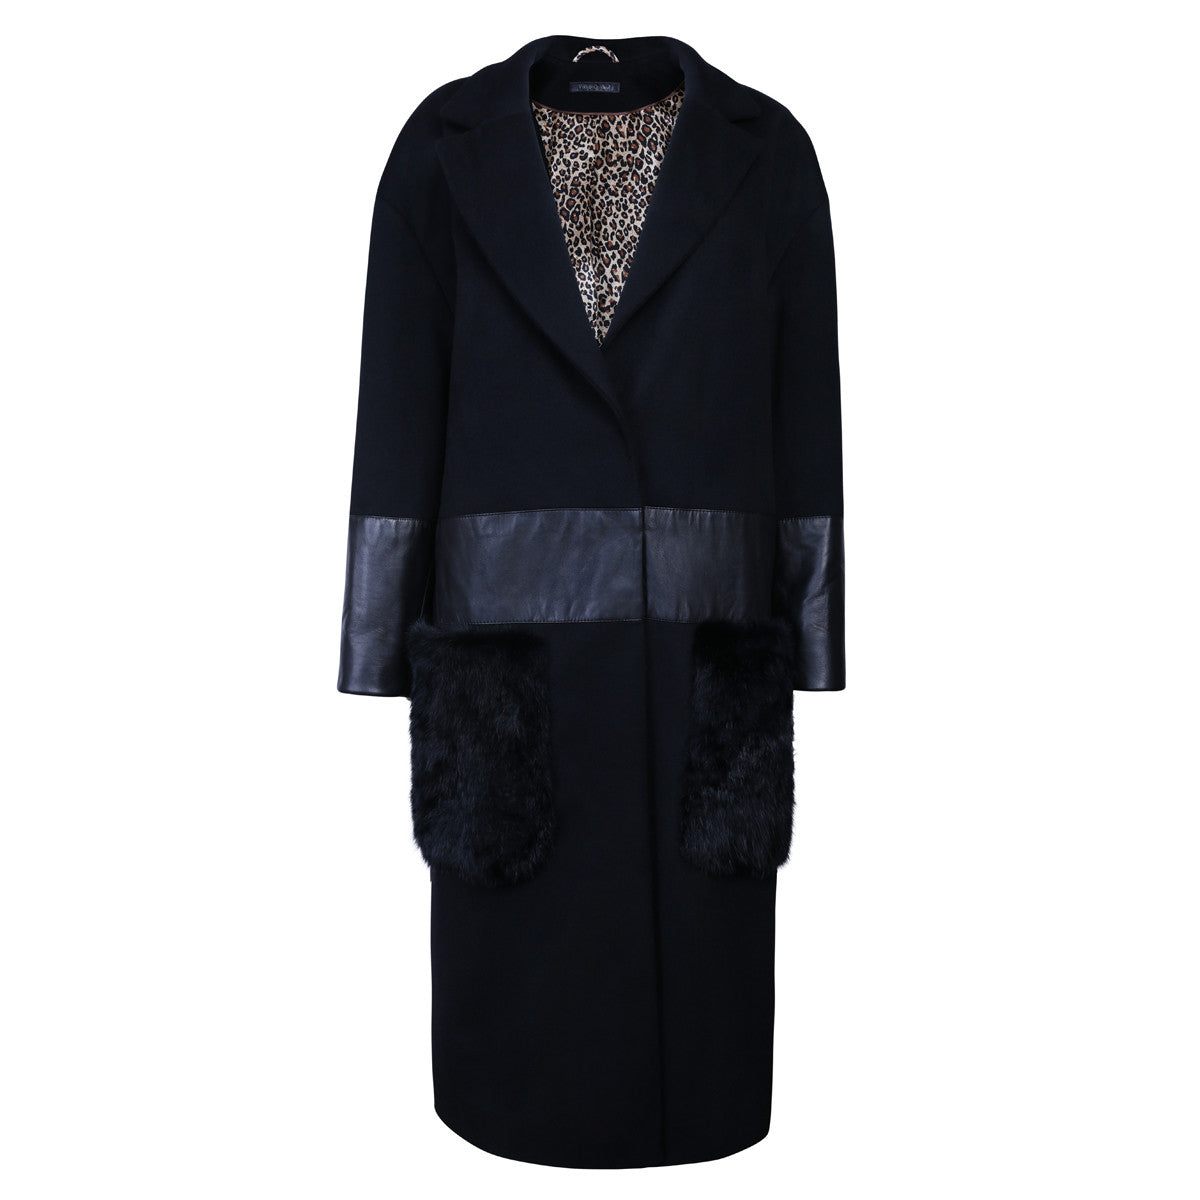 'Desire' Cashmere Oversized Coat - VOLS & ORIGINAL